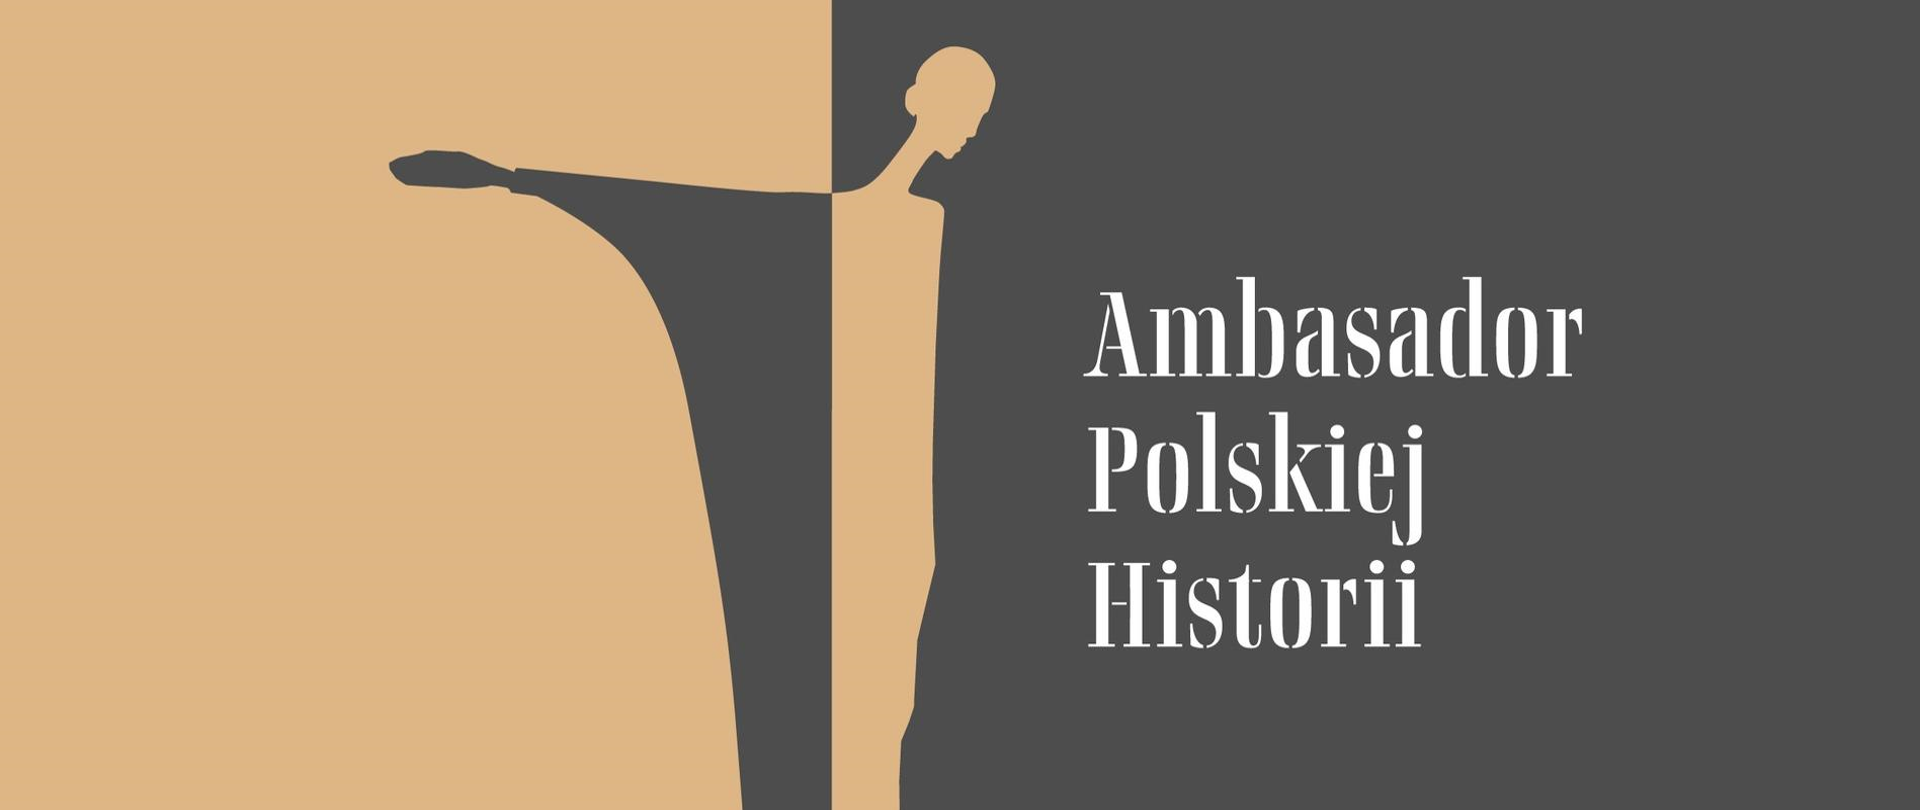 Nagroda "Ambasador Polskiej Historii"